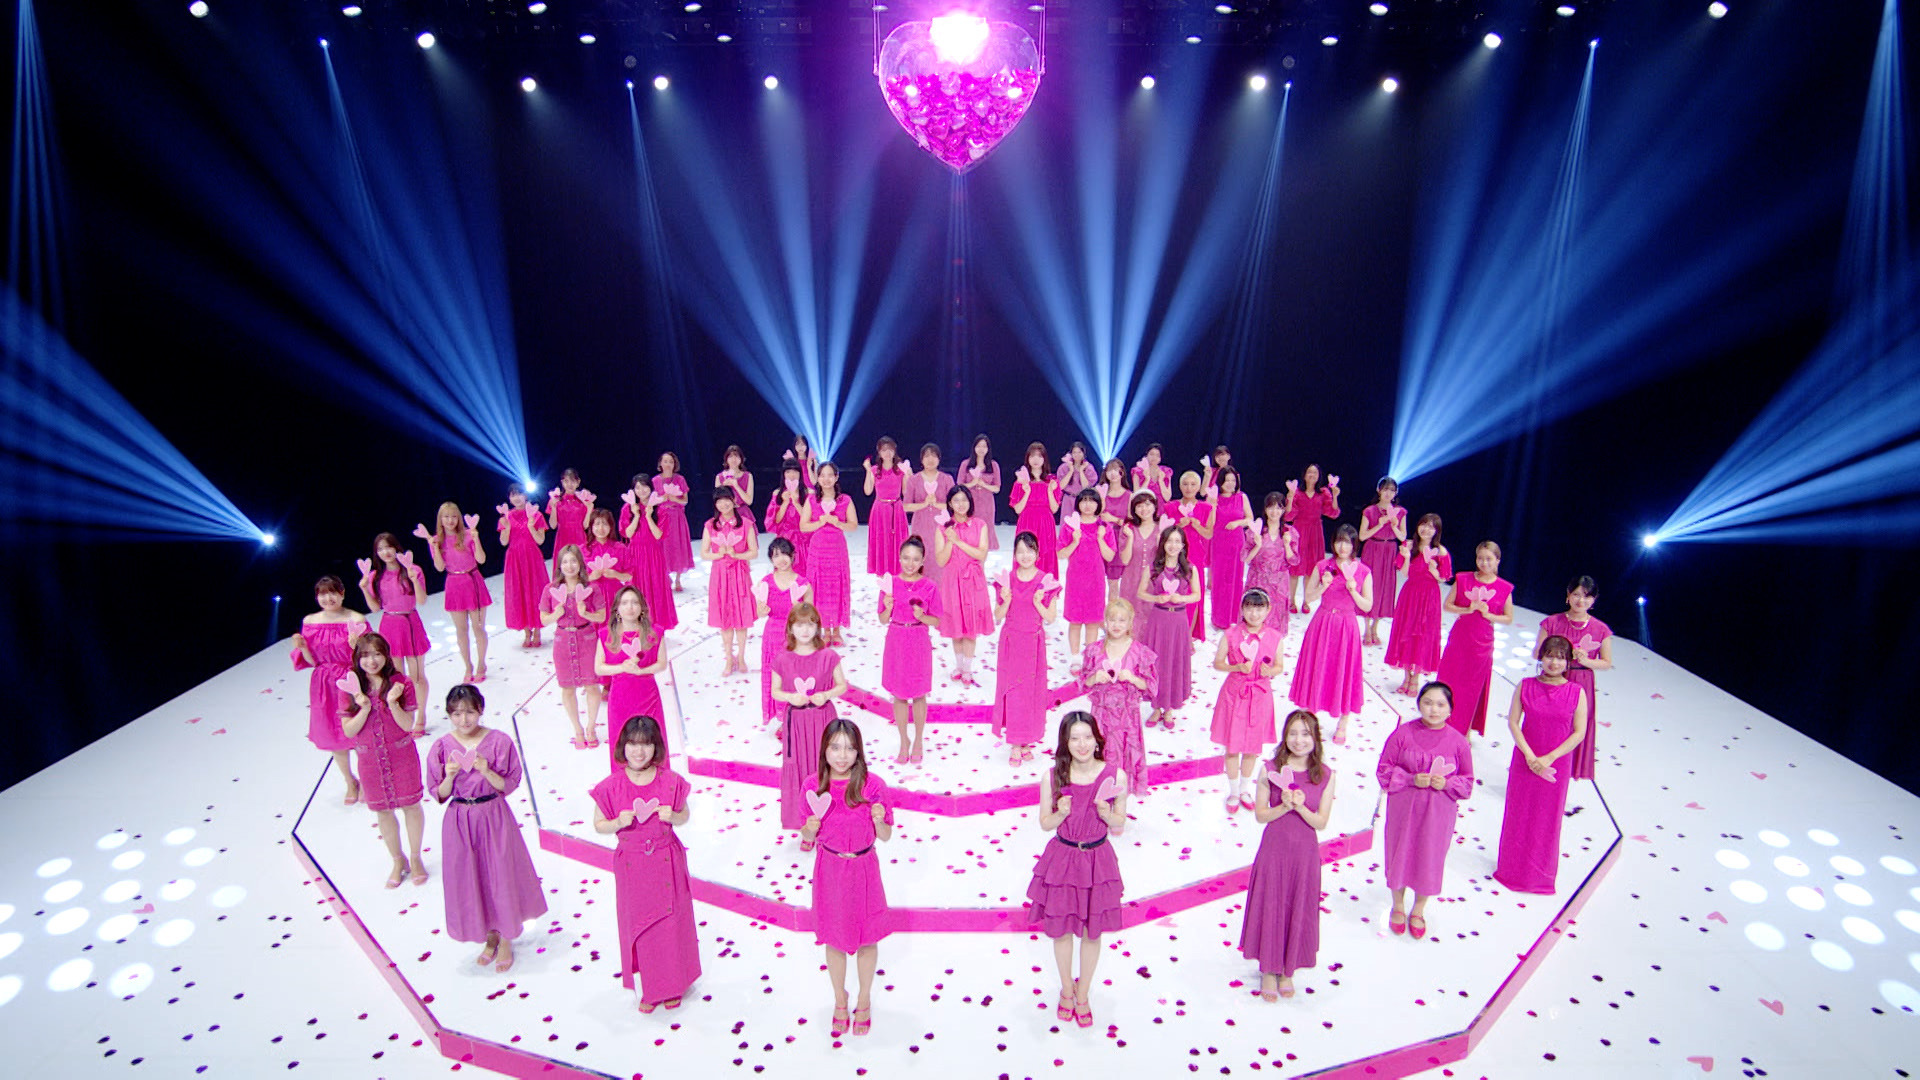 歌姫発掘の人気オーディション番組がコンサート開催！！
いよいよ佳境の『トロット・ガールズ・ジャパン』